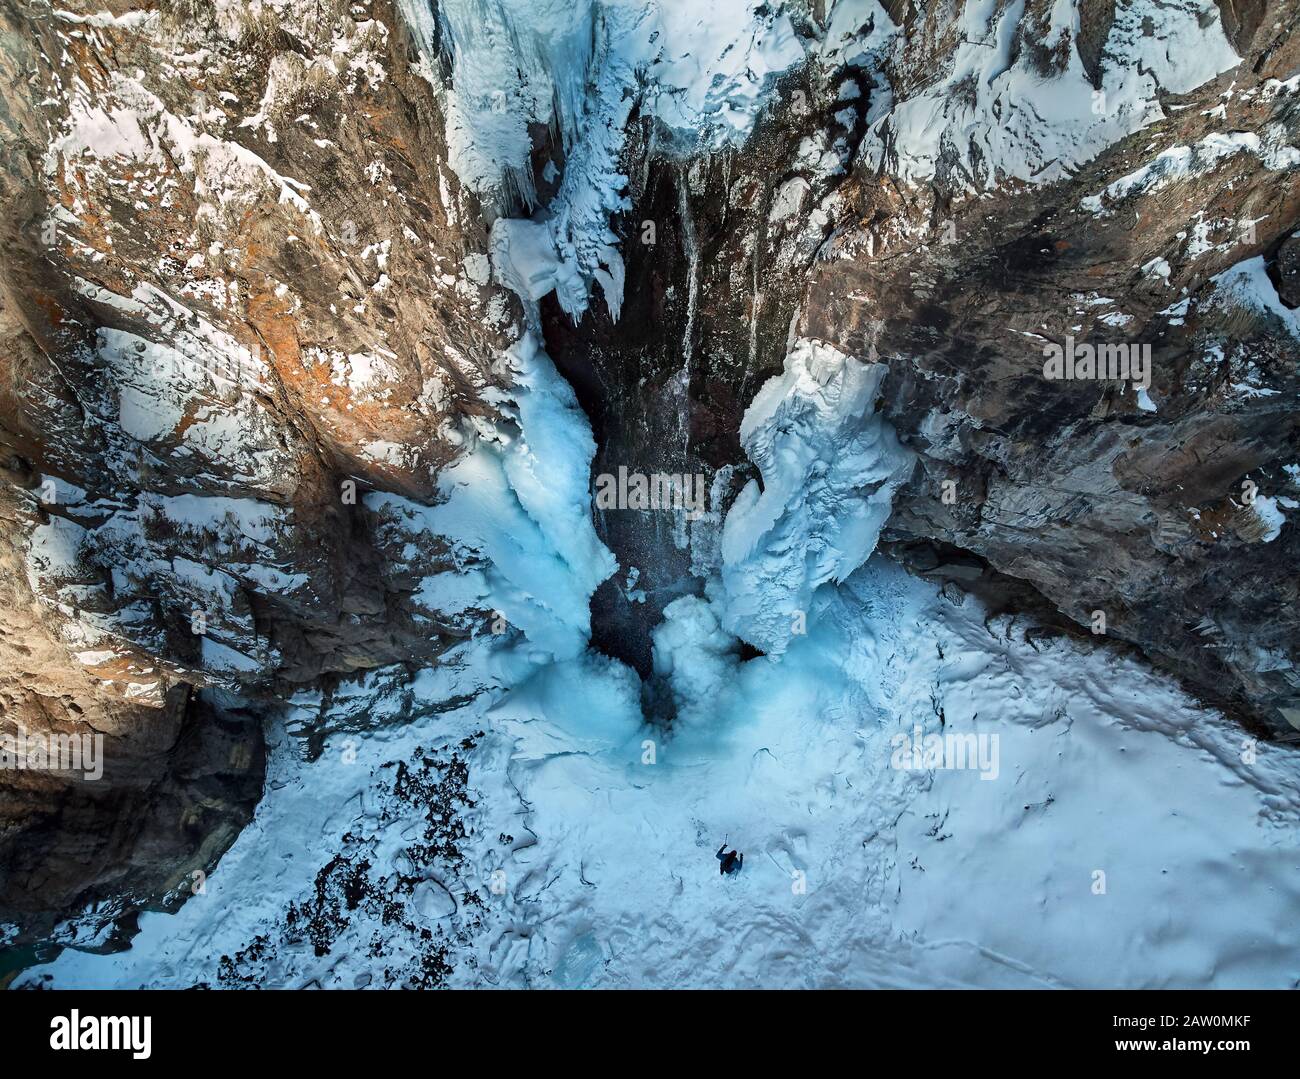 Le randonneur se trouve à proximité d'une chute d'eau gelée avec des icules dans les montagnes enneigées du Kazakhstan. Tir de drone aérien, vue de dessus. Banque D'Images